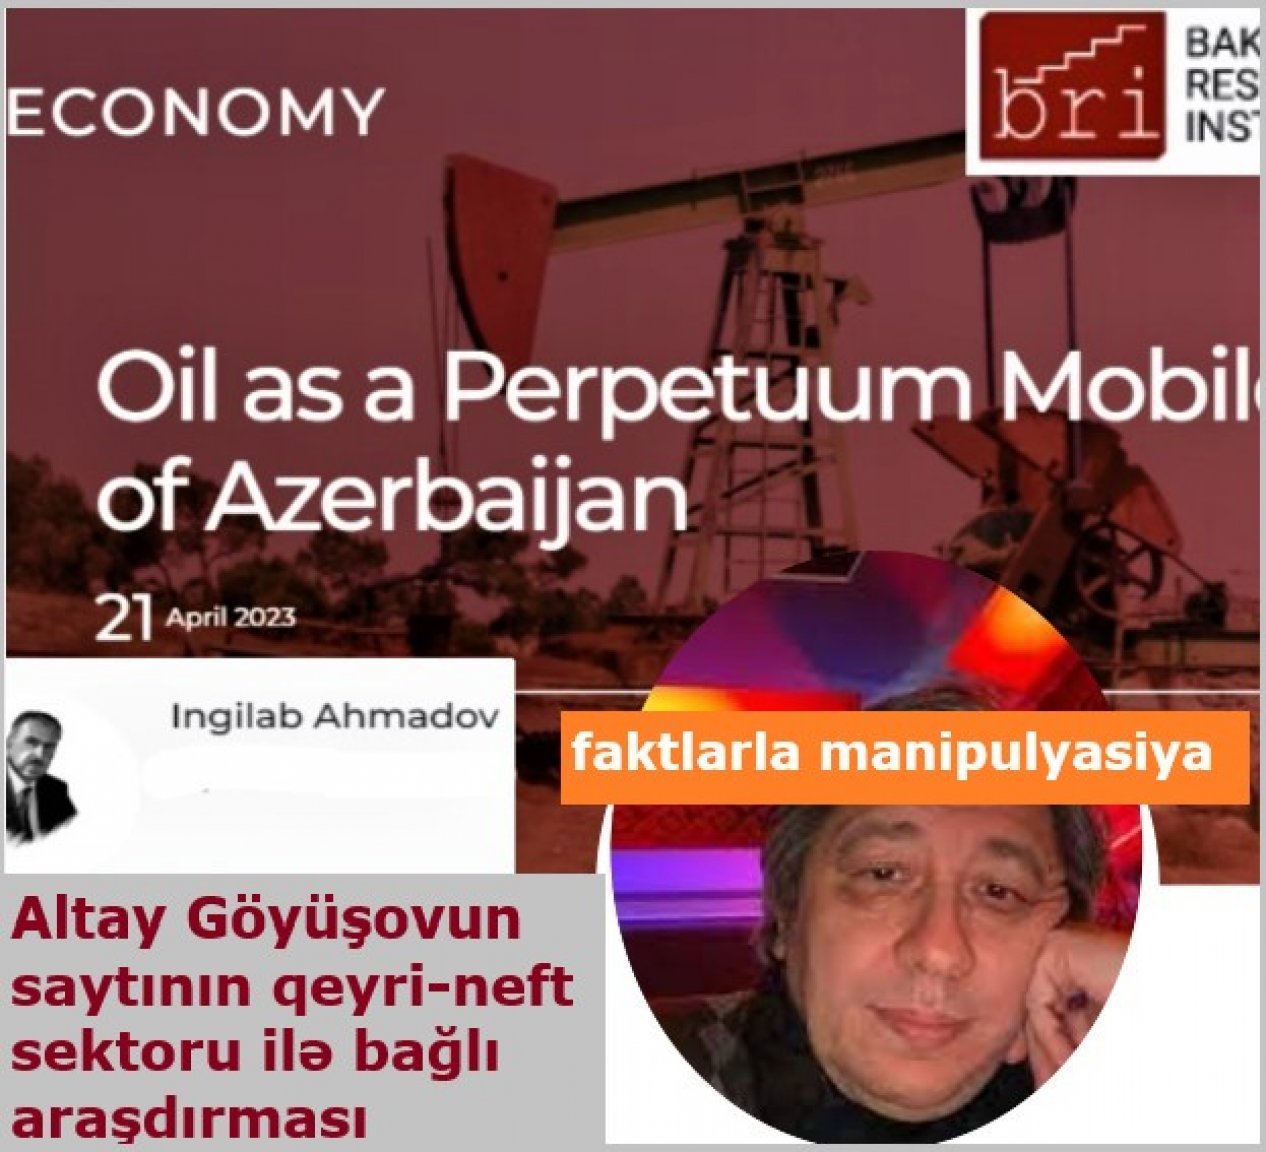 Altay Göyüşovun saytının qeyri-neft sektoru ilə bağlı araşdırmasını analiz etdik